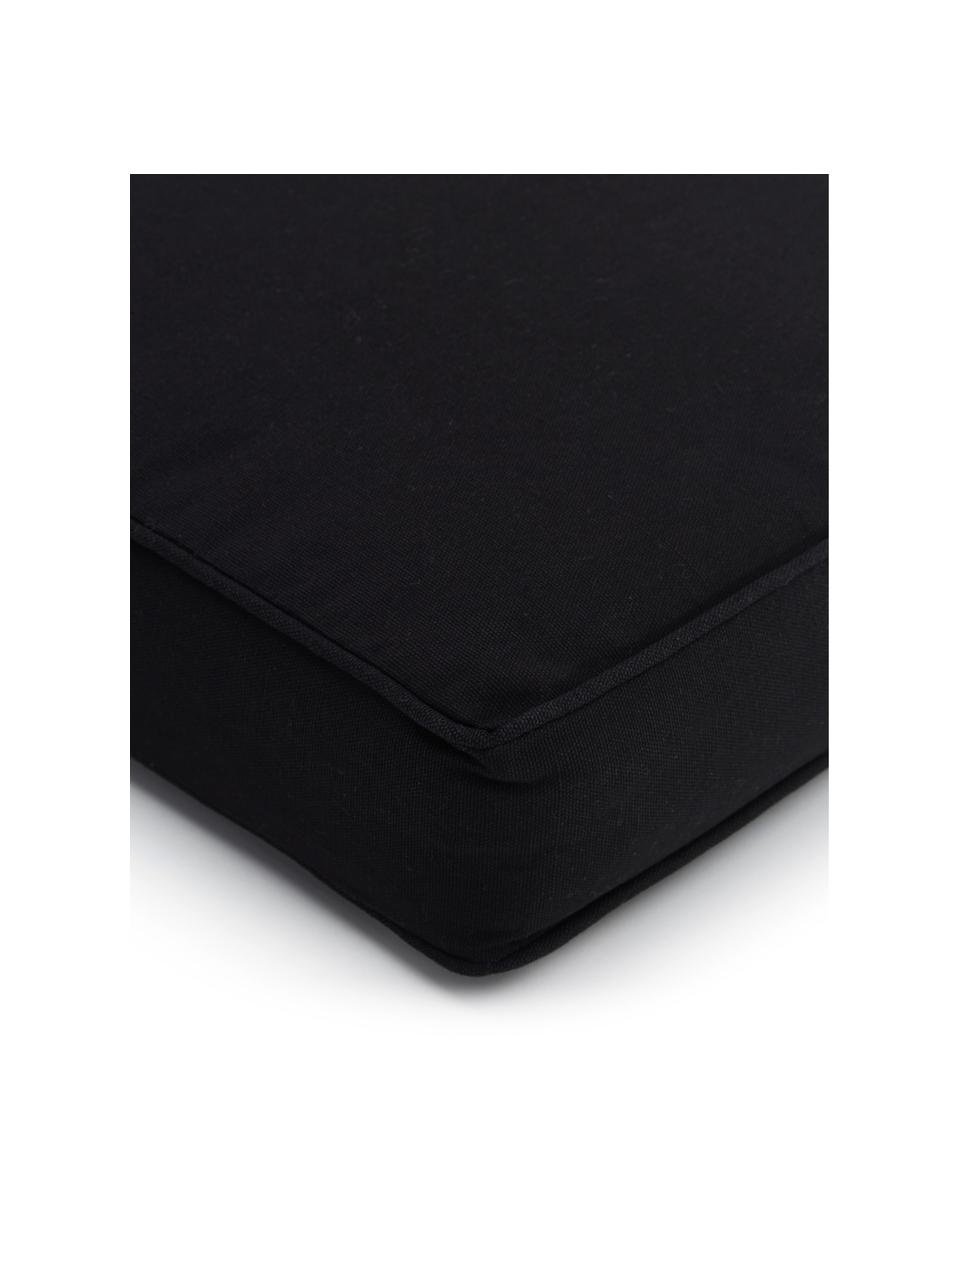 Cuscino sedia alto in cotone nero Zoey, Rivestimento: 100% cotone, Nero, Larg. 40 x Lung. 40 cm